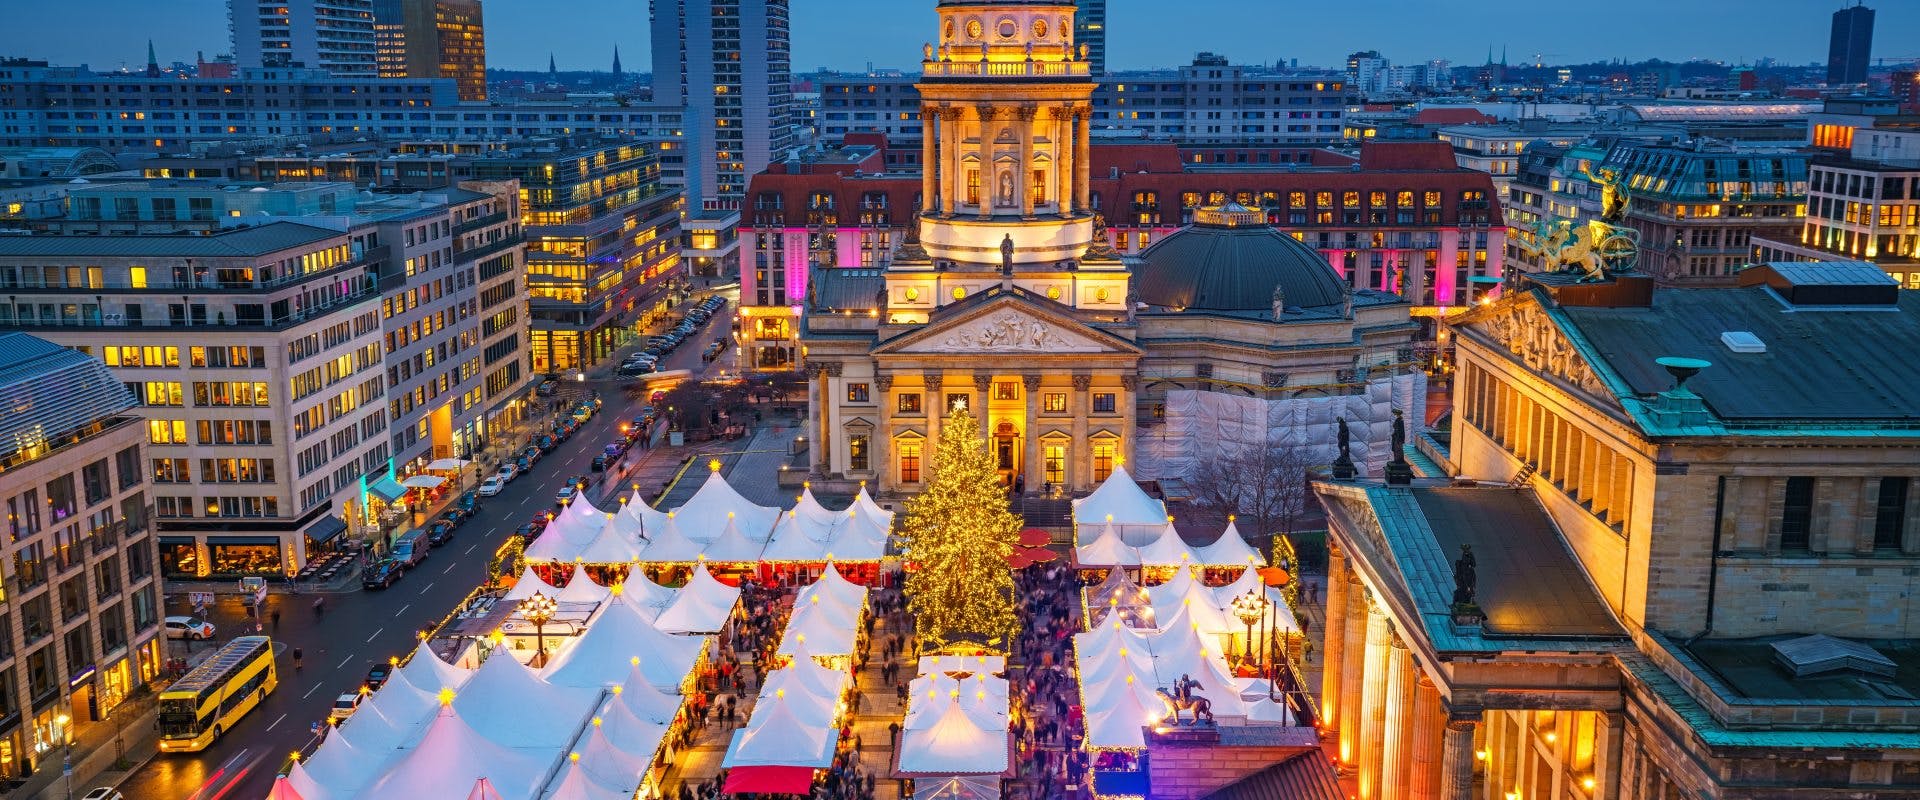 Christmas markets at Gendarmenmarkt